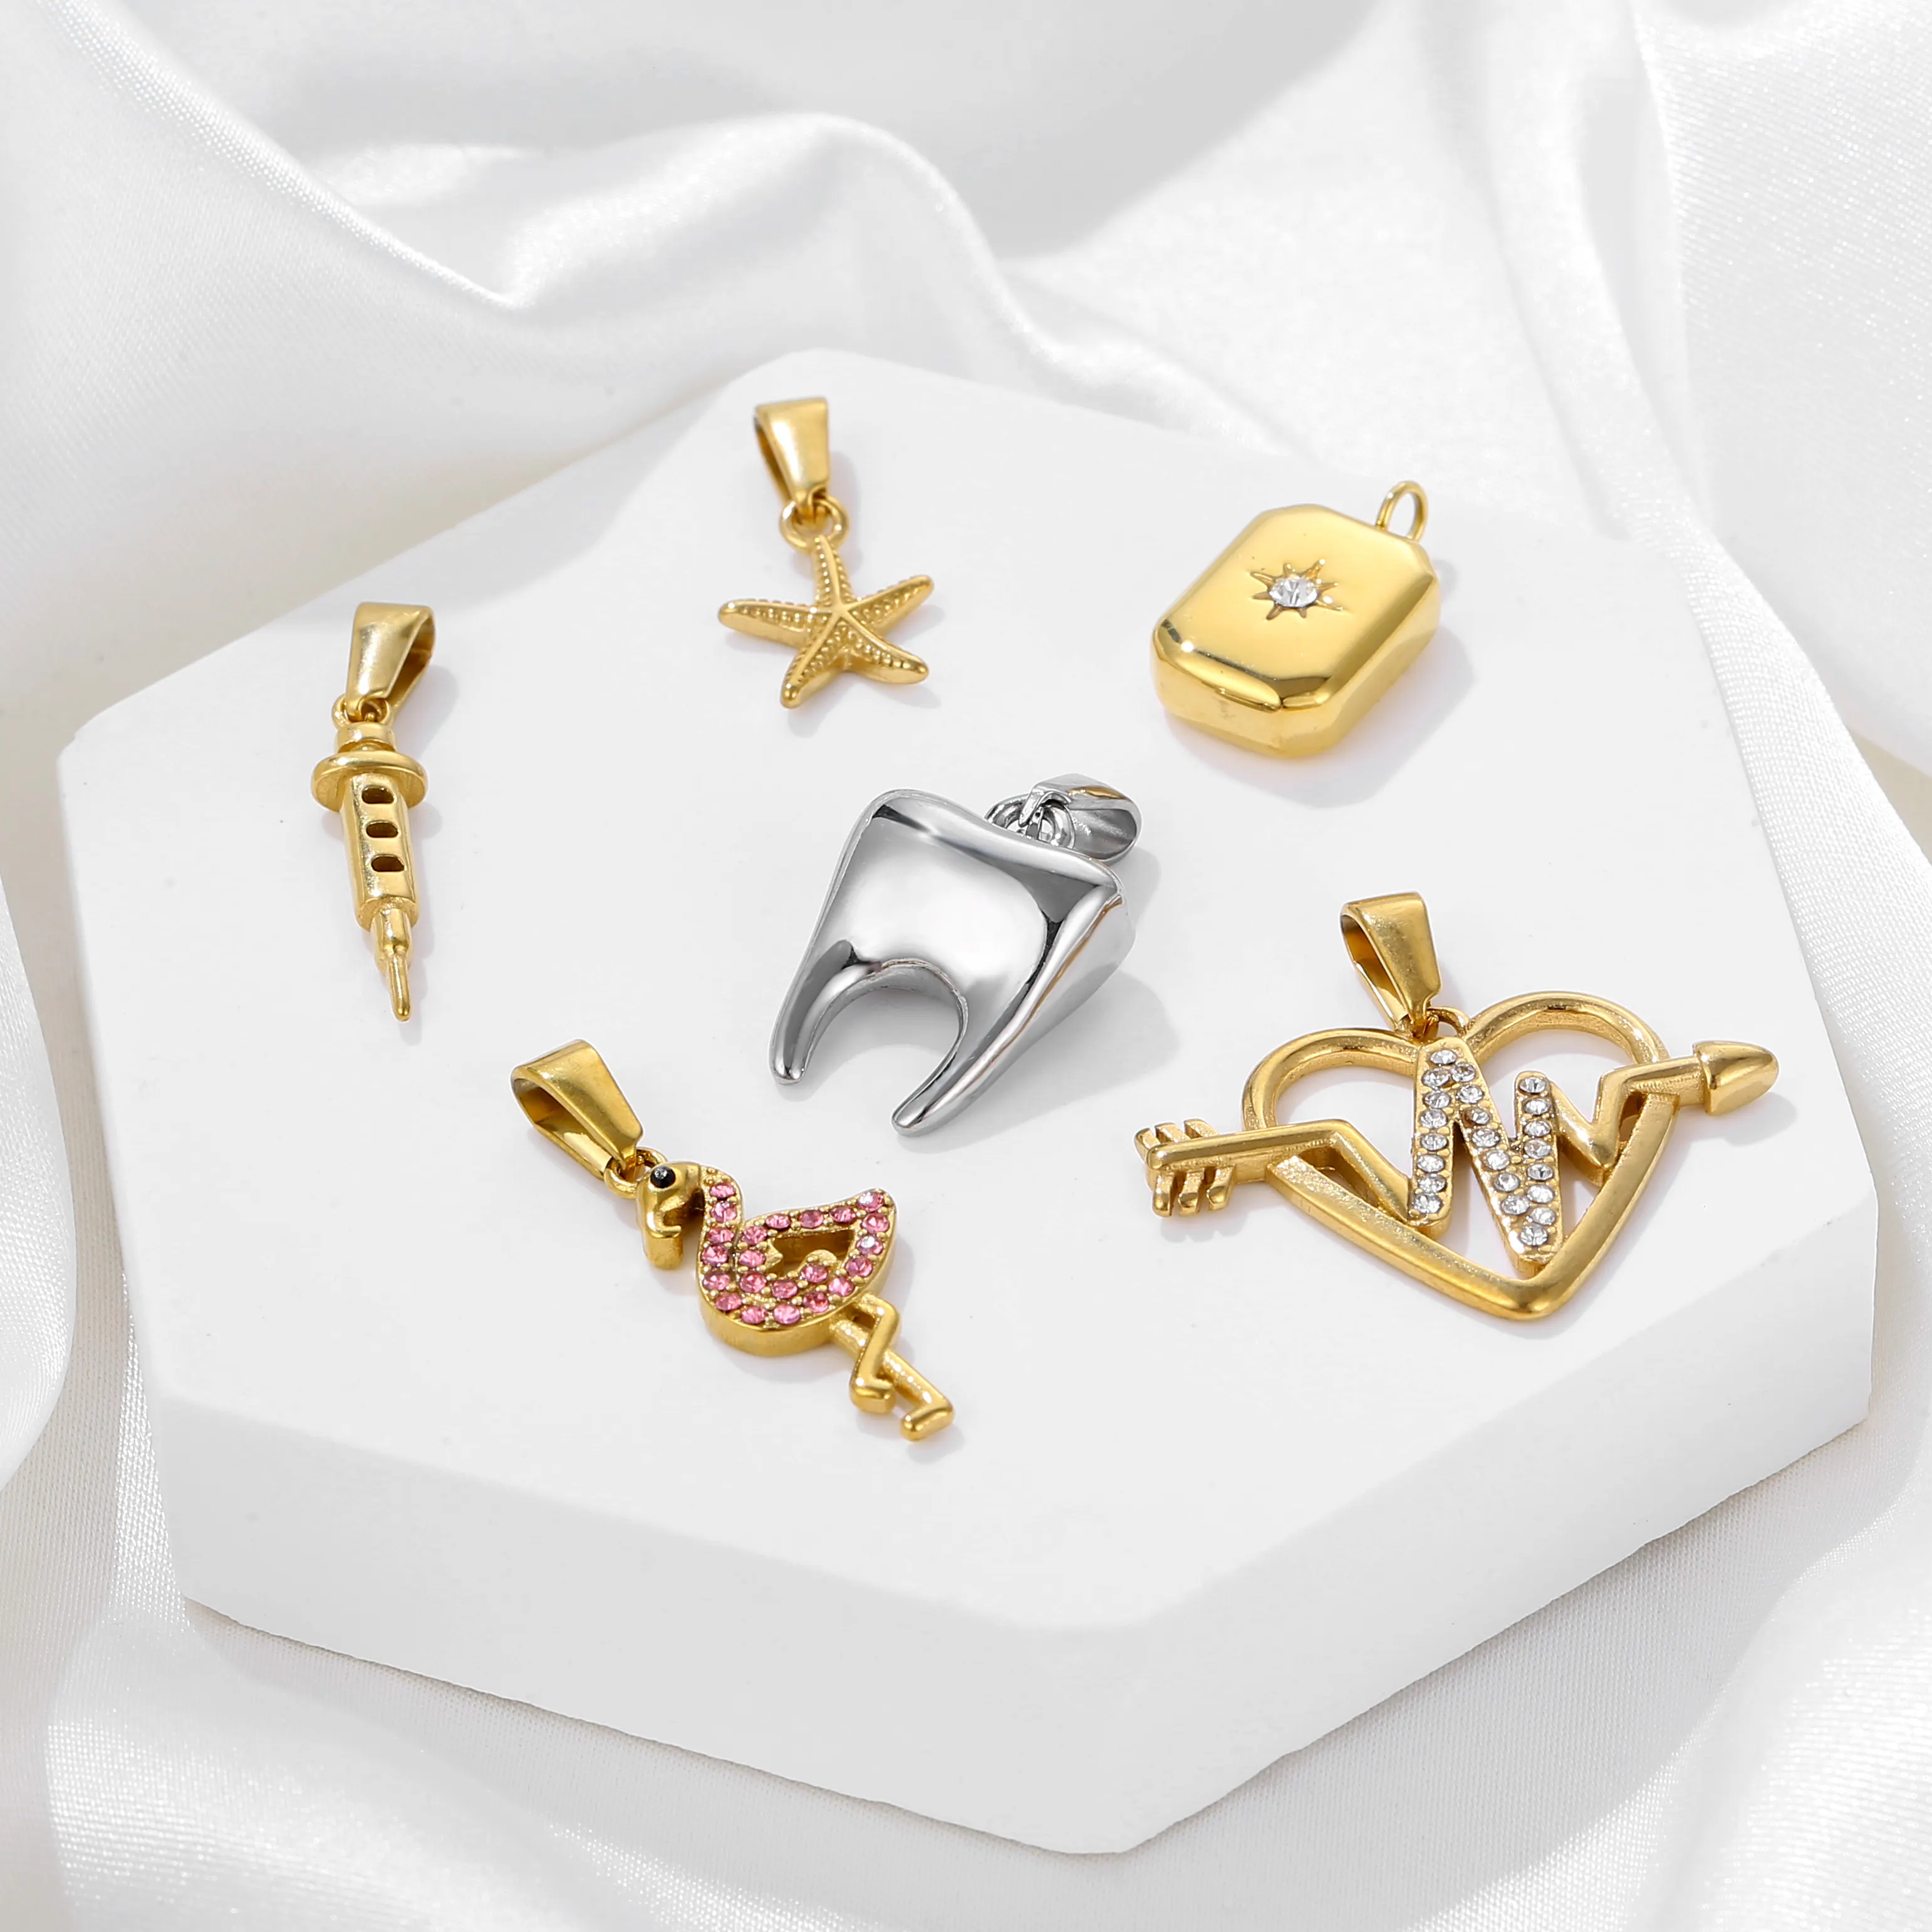 Pingente pequeno de joia fashion para colar de joias DIY, pingente banhado a ouro 18K de aço inoxidável à prova d'água